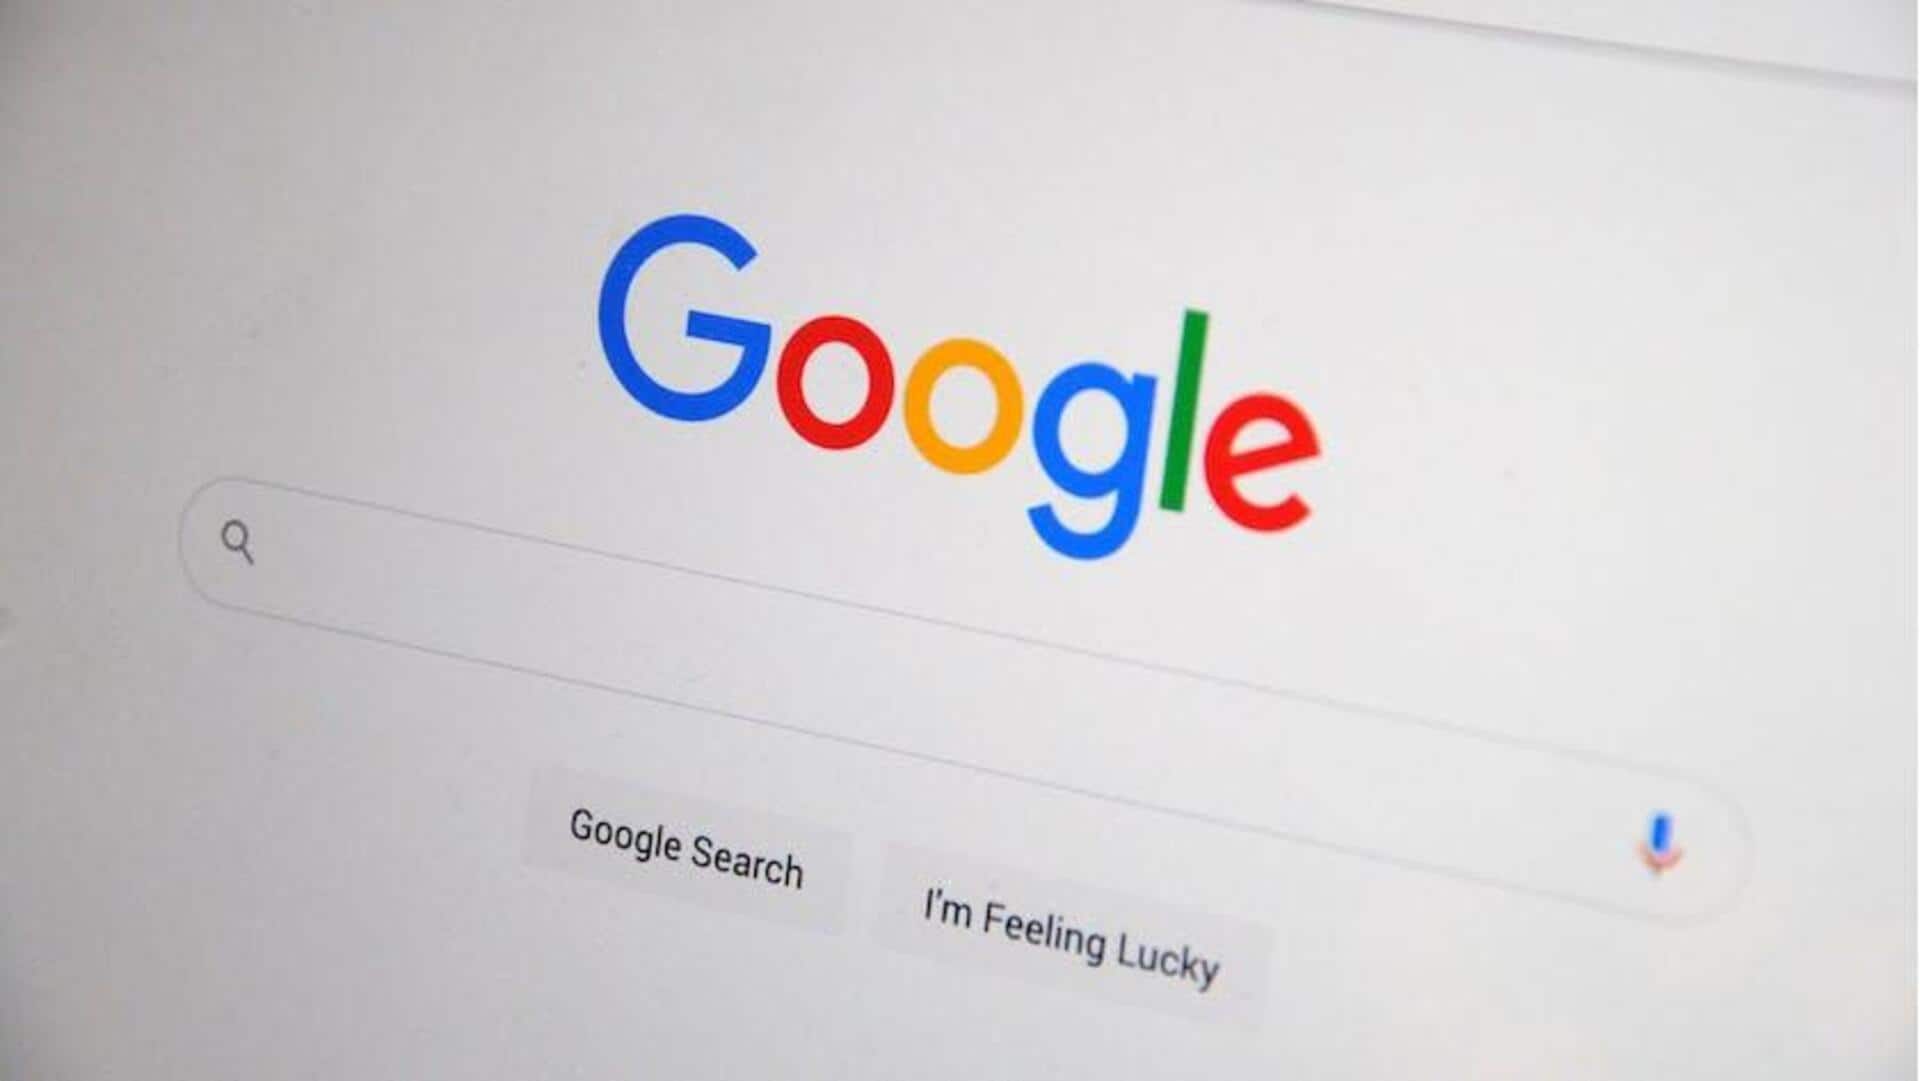 Google's antitrust trial in US: Key takeaways from Day 1